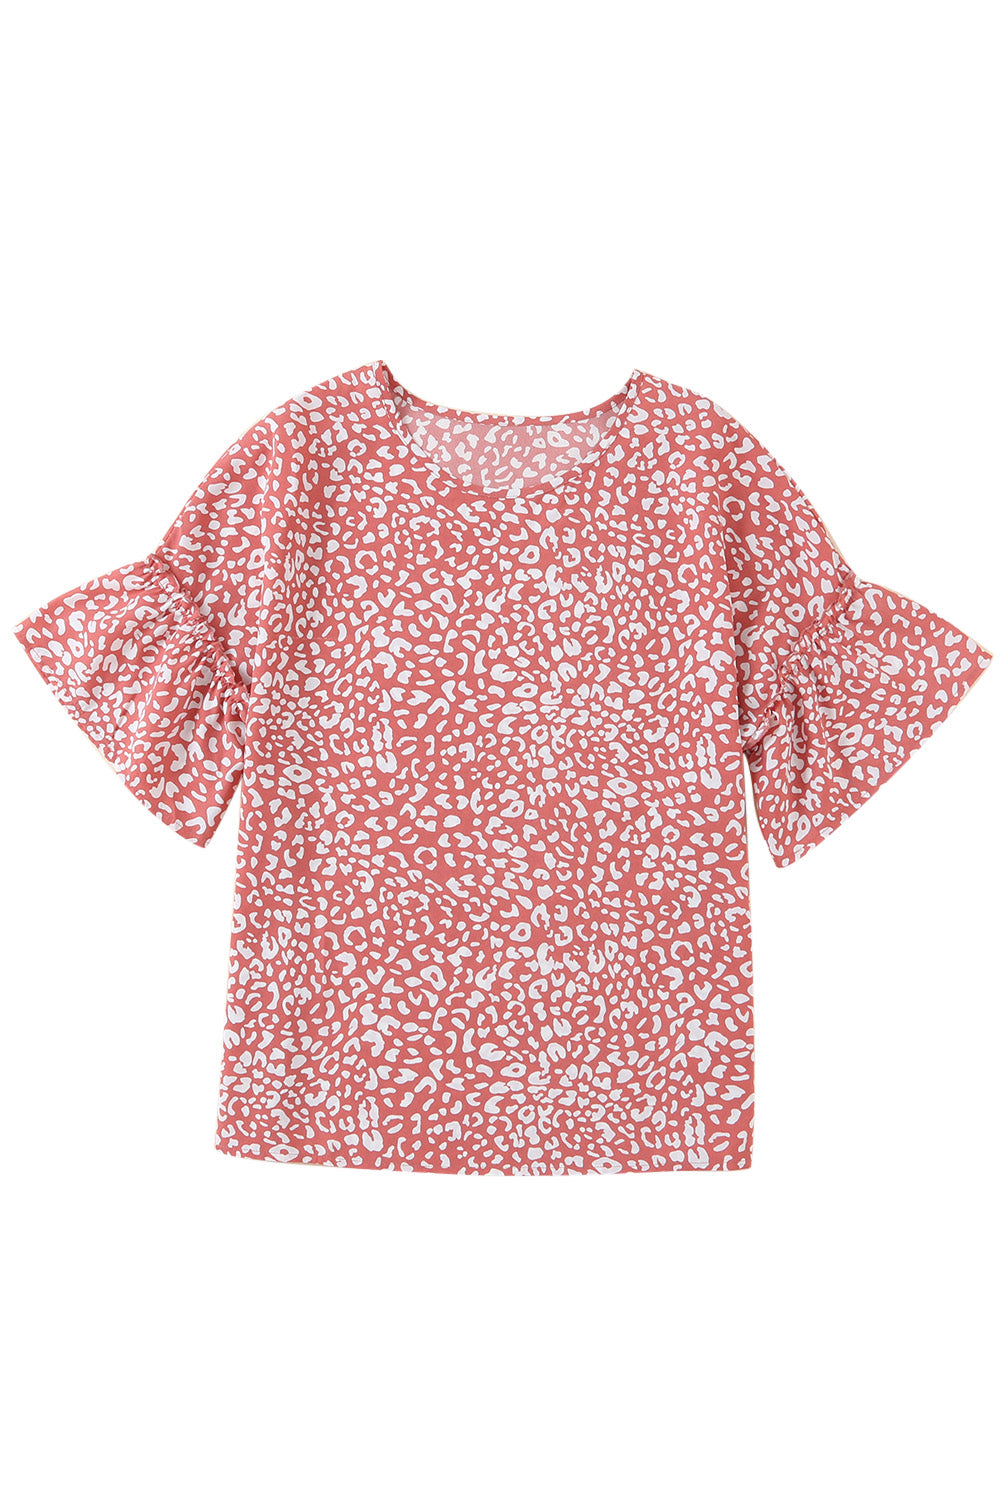 Rosafarbenes T-Shirt mit Leopardenmuster und Rüschenärmeln